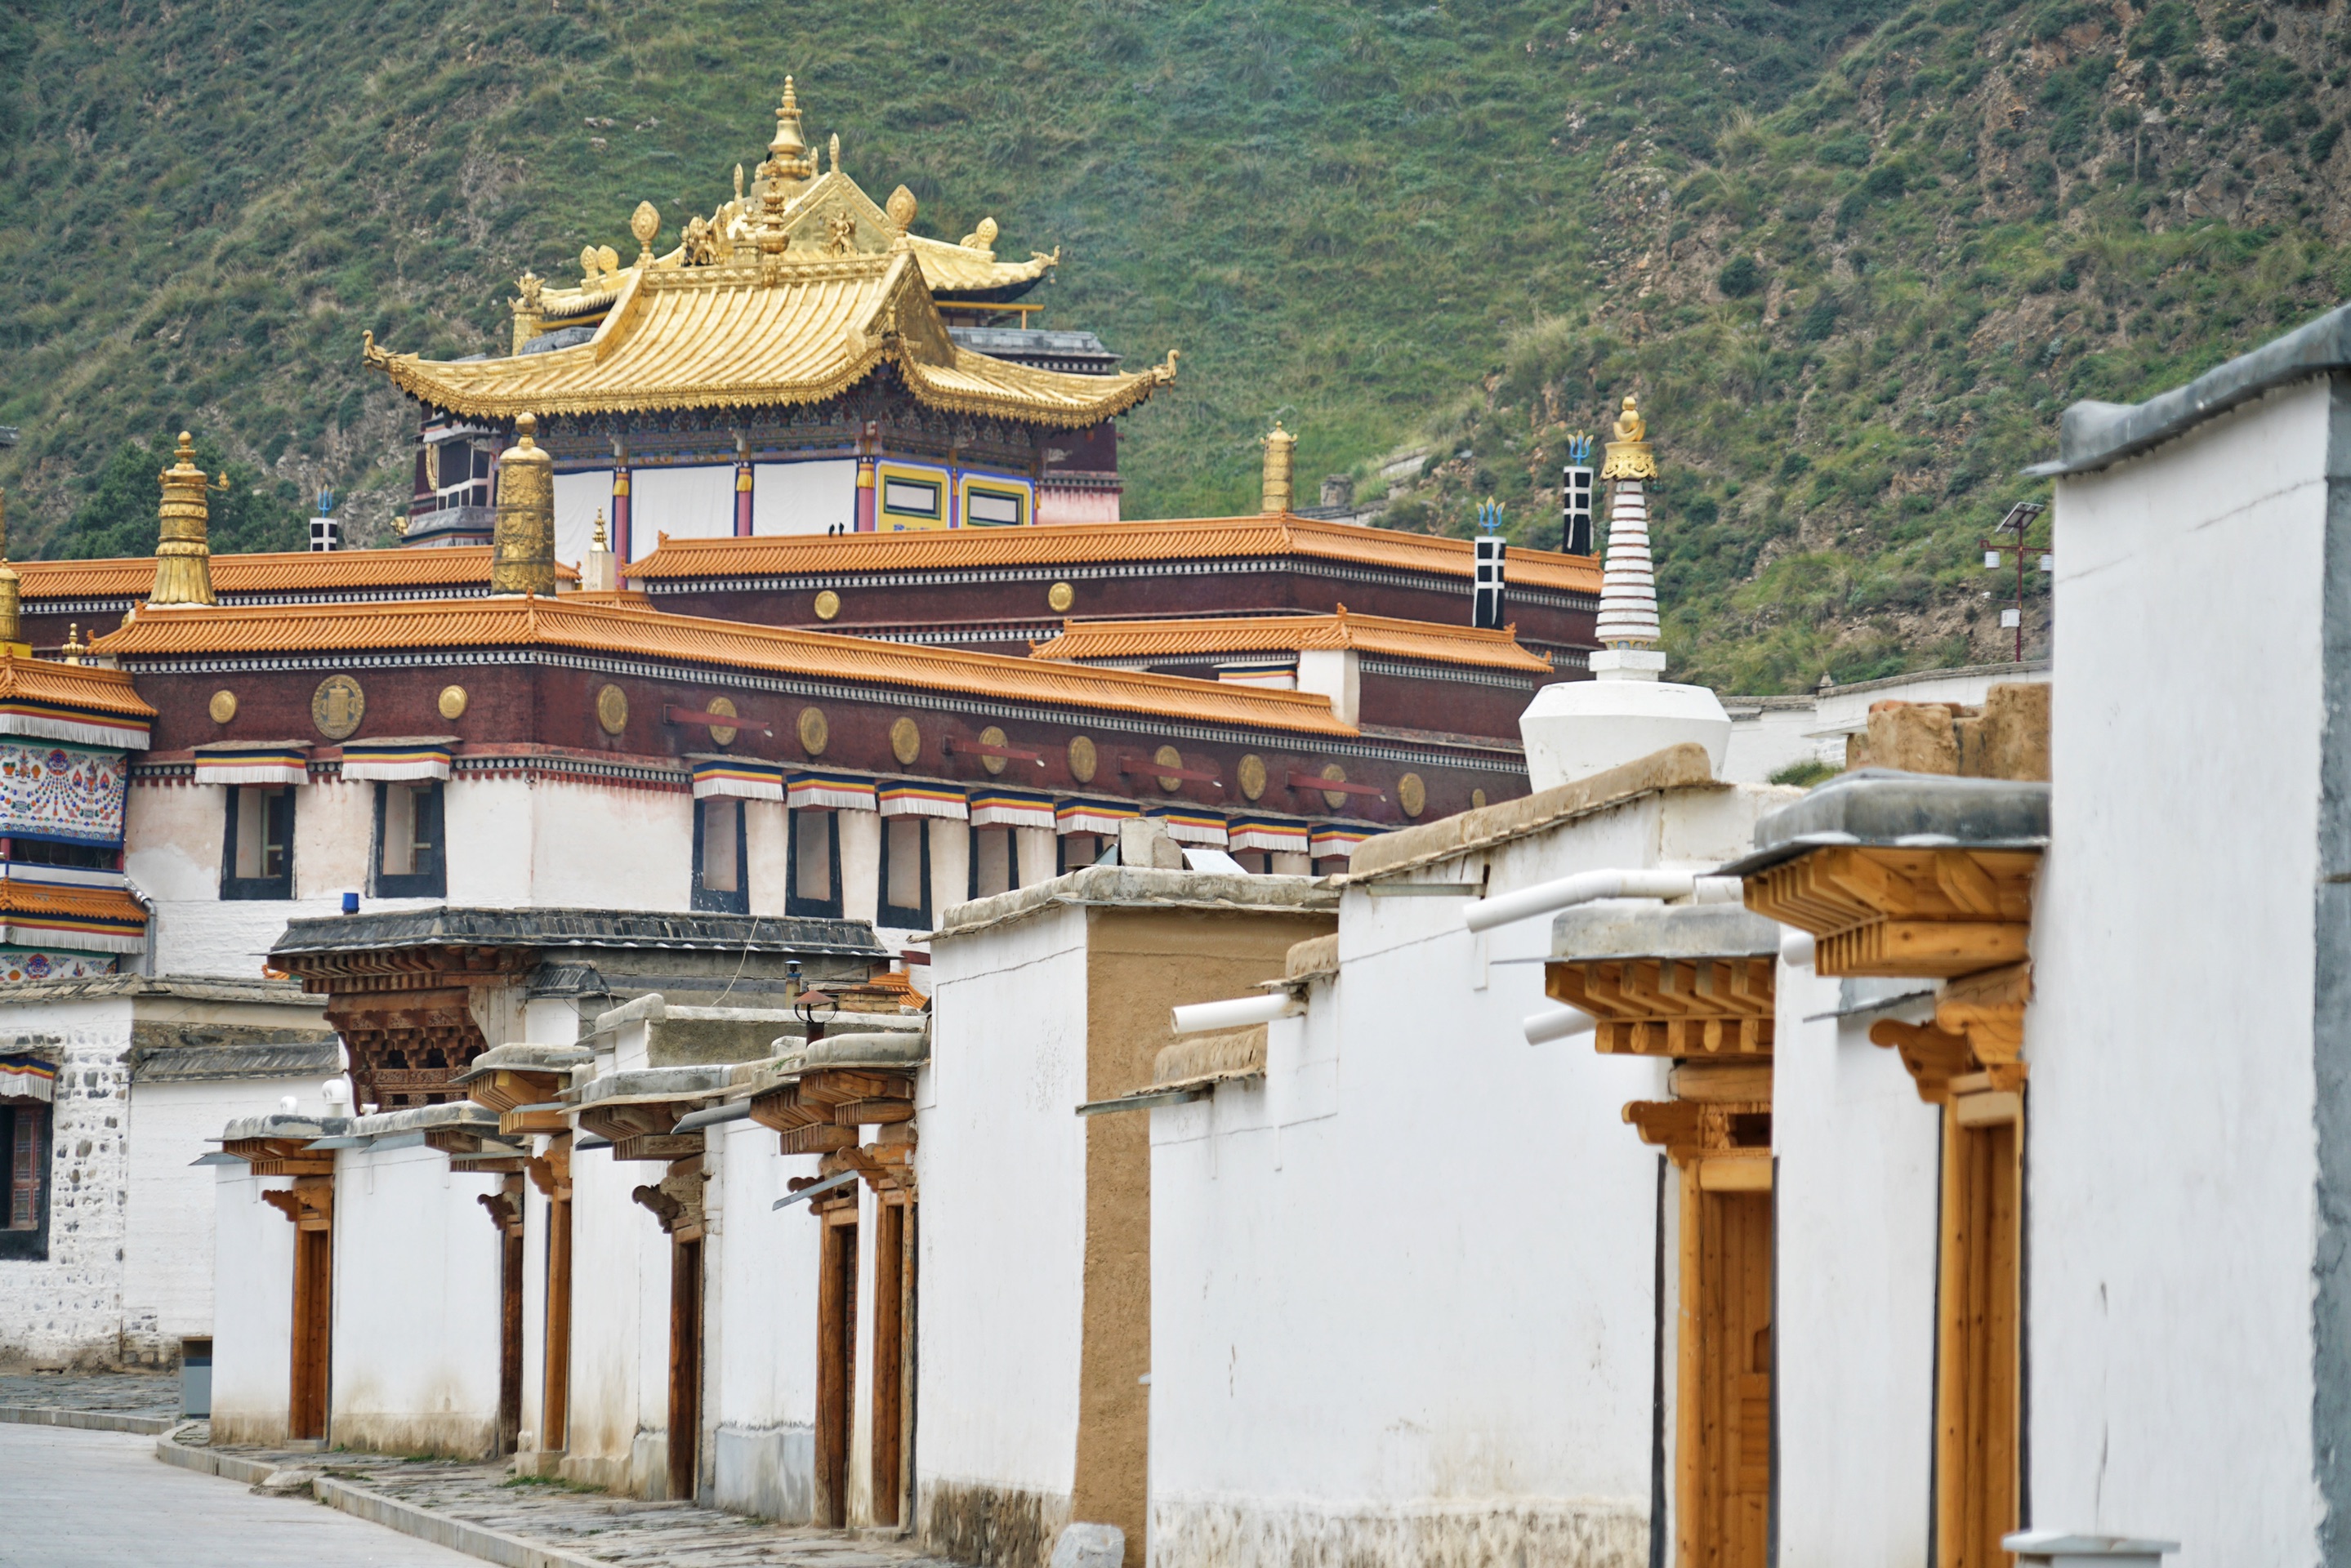 拉卜楞寺藏传佛教格鲁派六大寺院之一被世界誉为“世界藏学府”